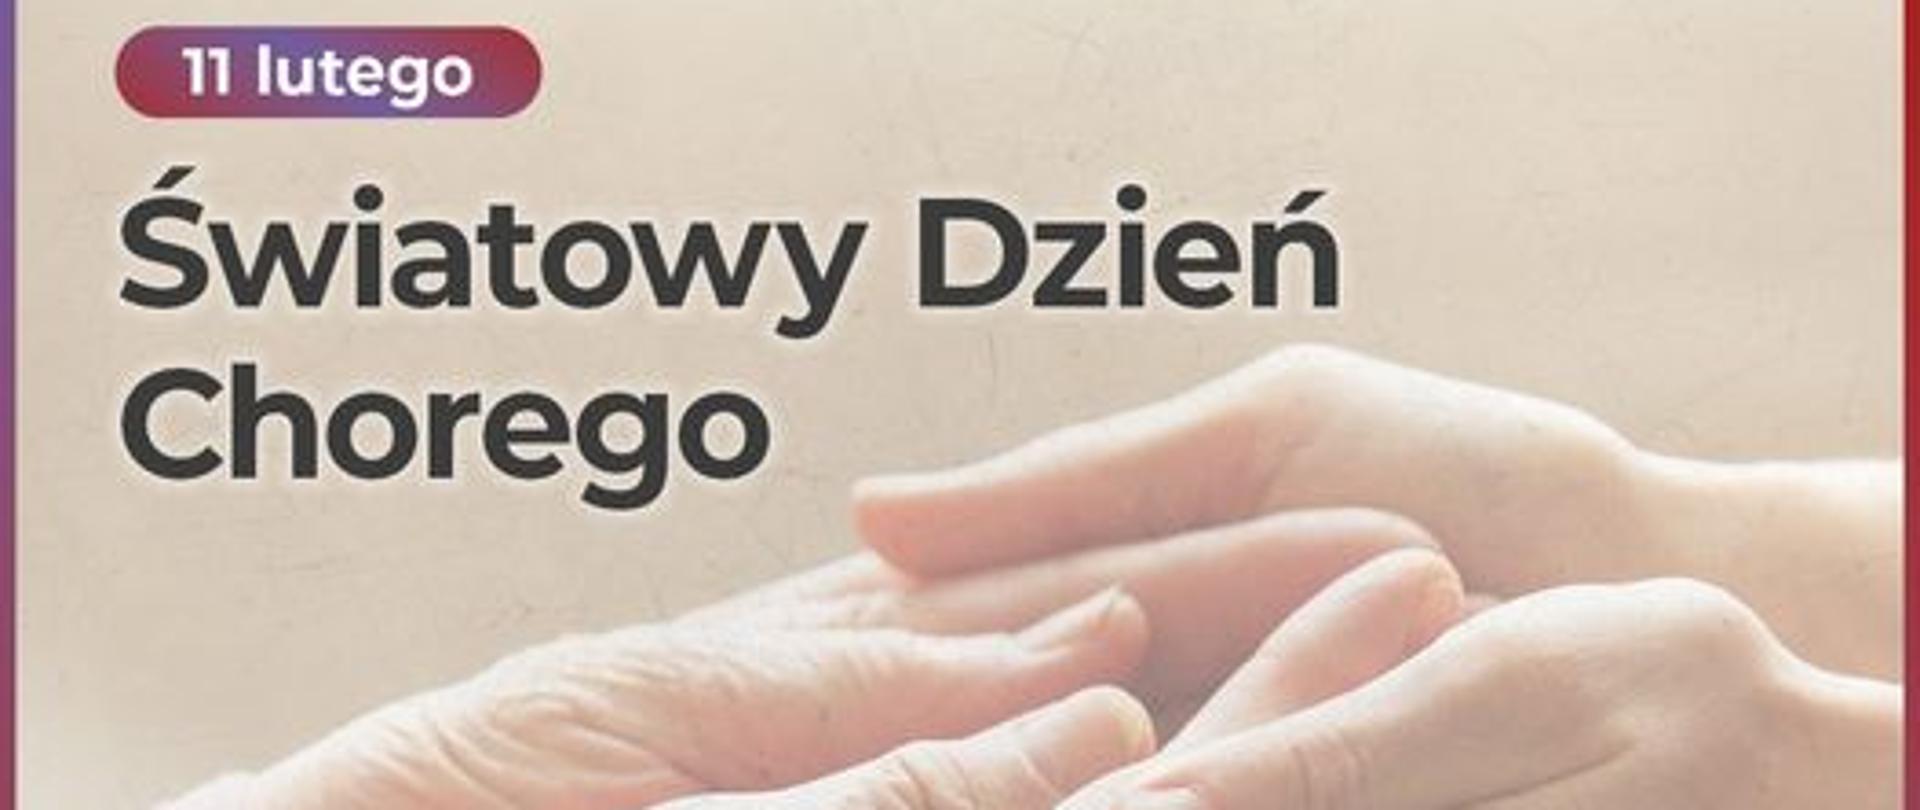 Fotografia dłoni dwóch osób, dłonie w dłoniach. Wyżej tekst "11 lutego Światowy Dzień Chorego". Poniżej tekst "Bądź, słuchaj, wspieraj". W prawym dolnym rogu logotyp Ministerstwa Zdrowia.